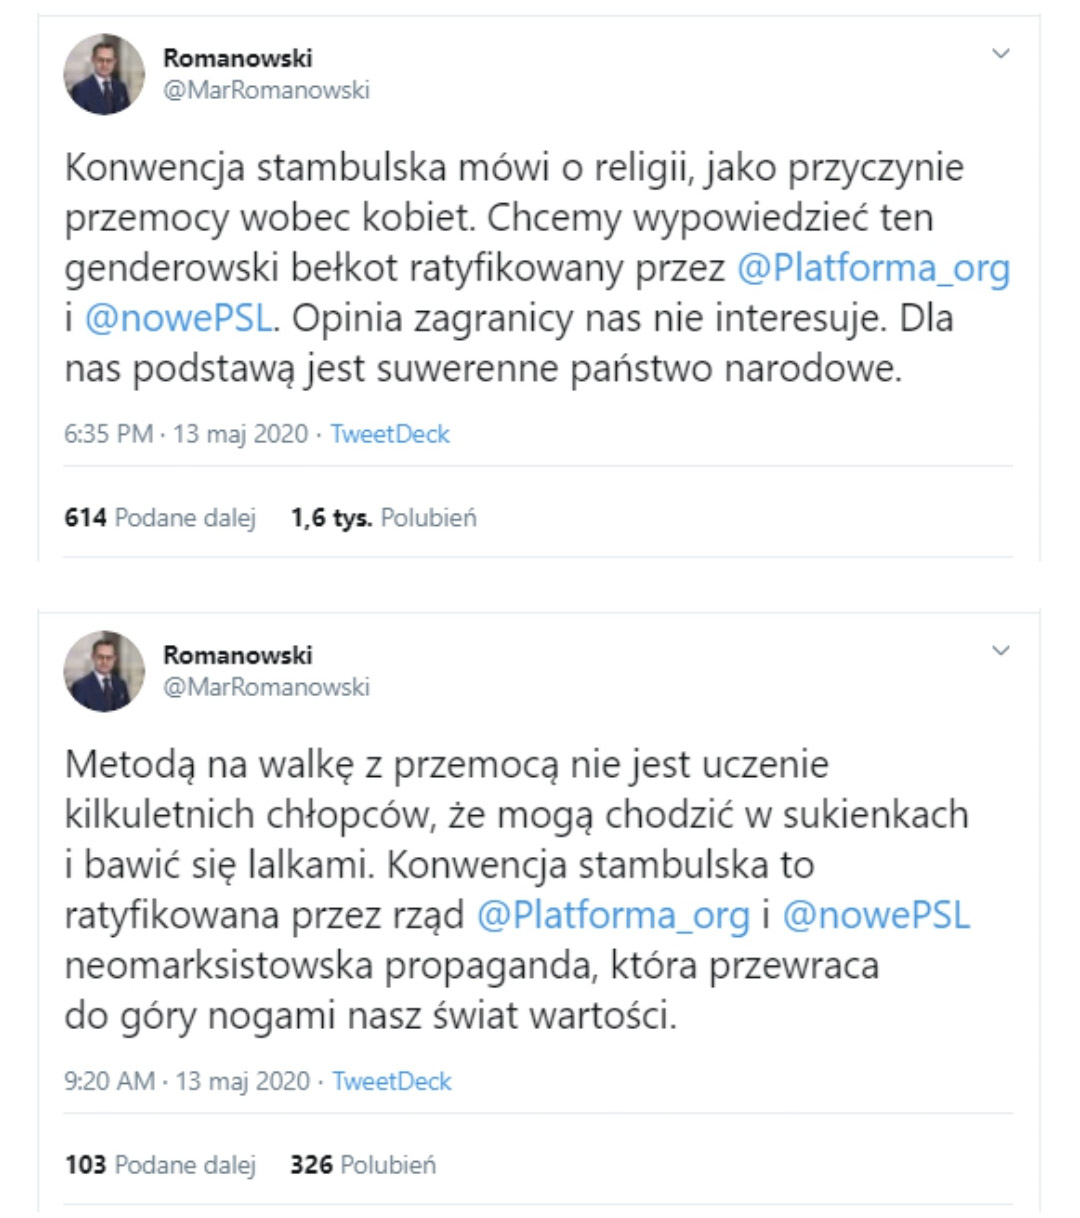 Польща повстала проти ЛГБТ-ідеології та хоче скасувати Стамбульську конвенцію, через наявність в ній гендерної розпусти